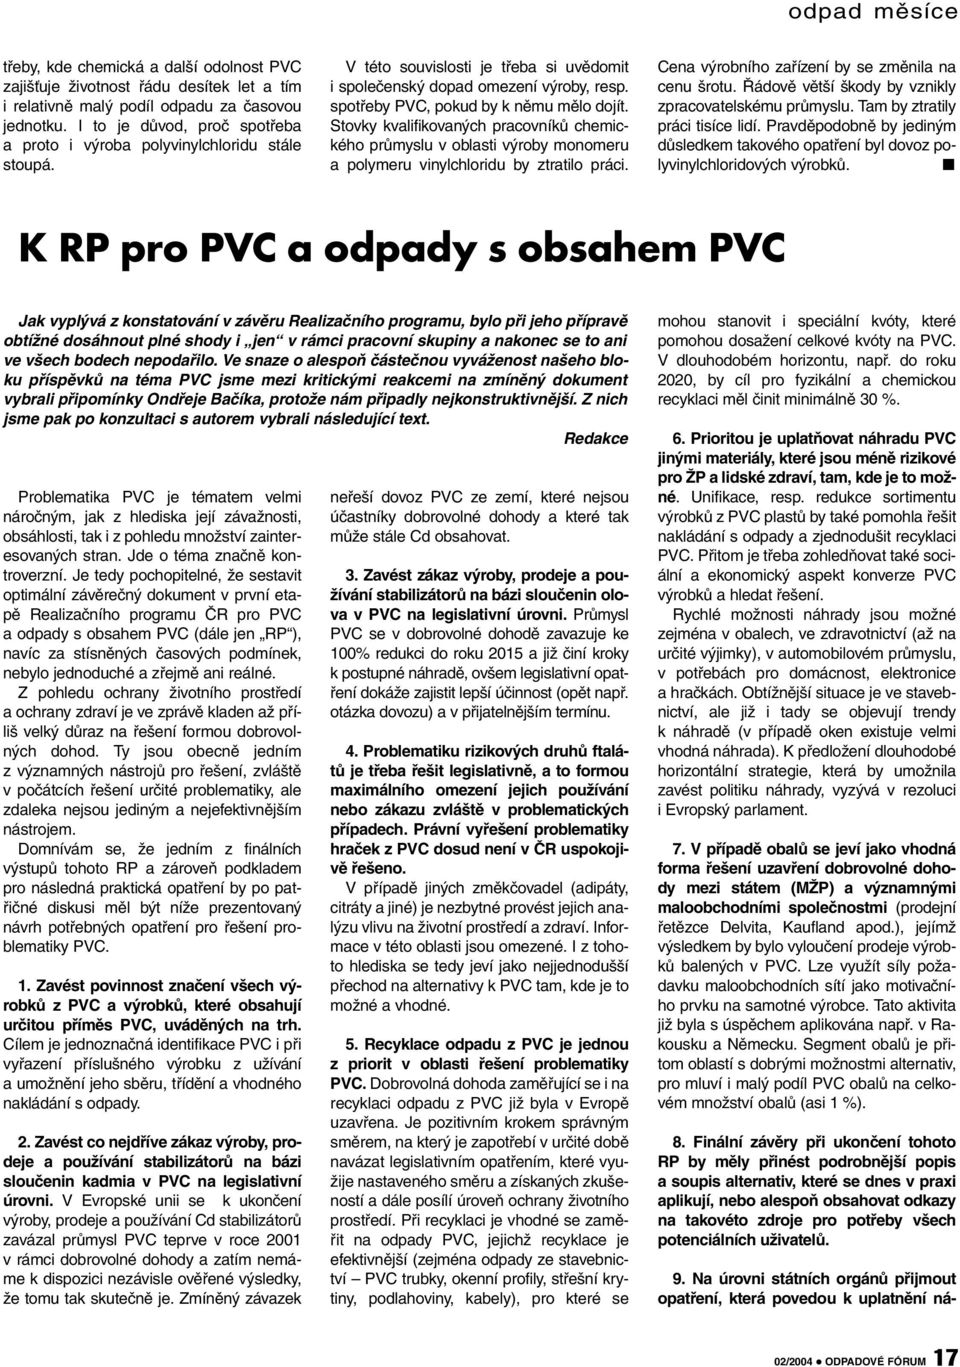 spotřeby PVC, pokud by k němu mělo dojít. Stovky kvalifikovaných pracovníků chemického průmyslu v oblasti výroby monomeru a polymeru vinylchloridu by ztratilo práci.